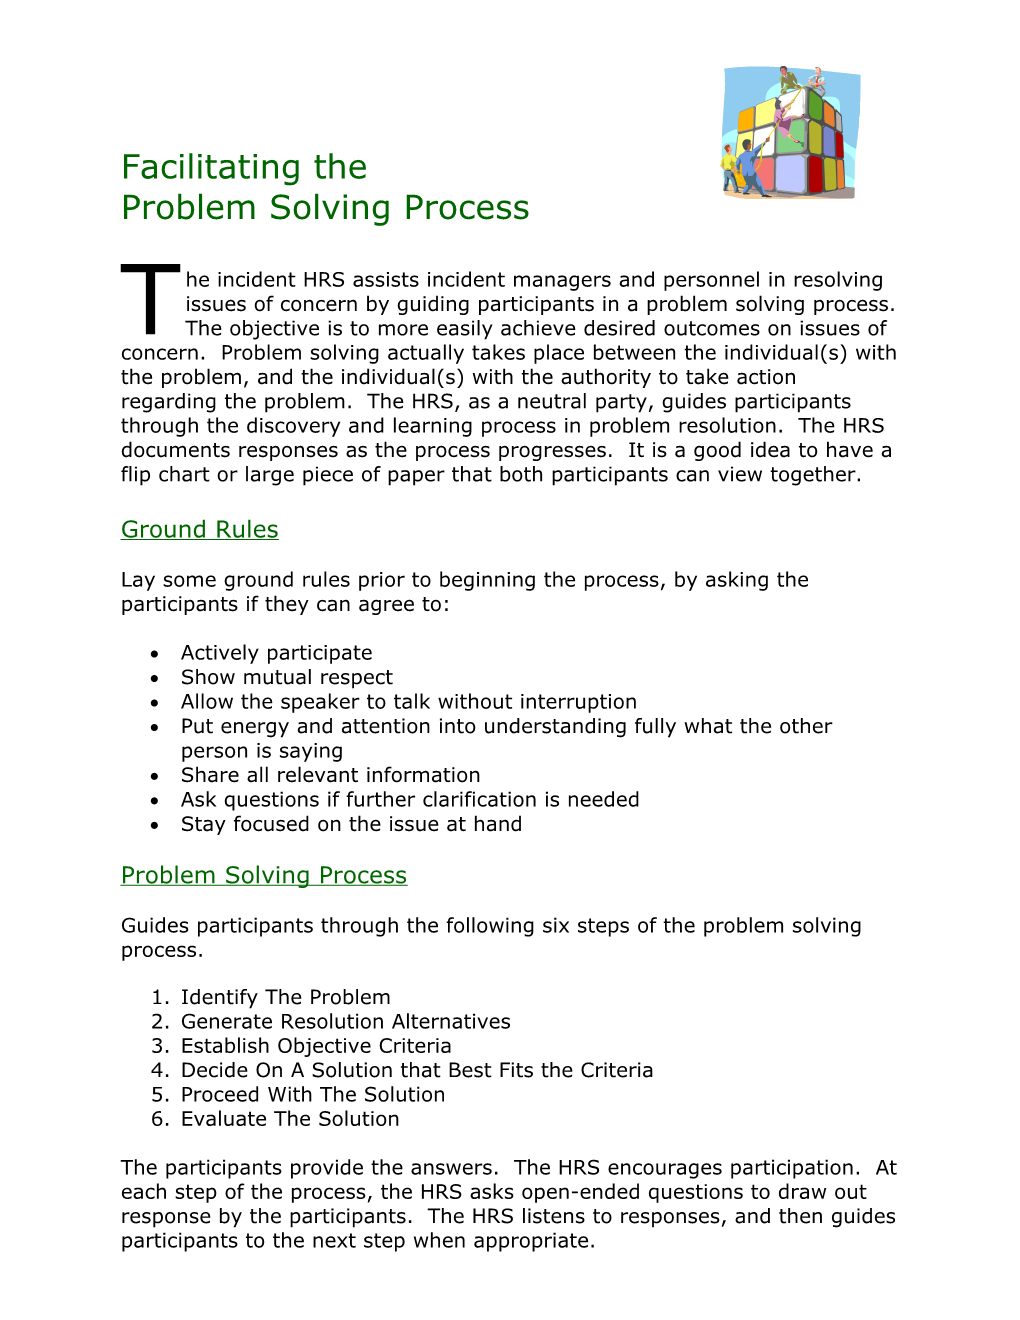 Facilitating the Problem Solving Process